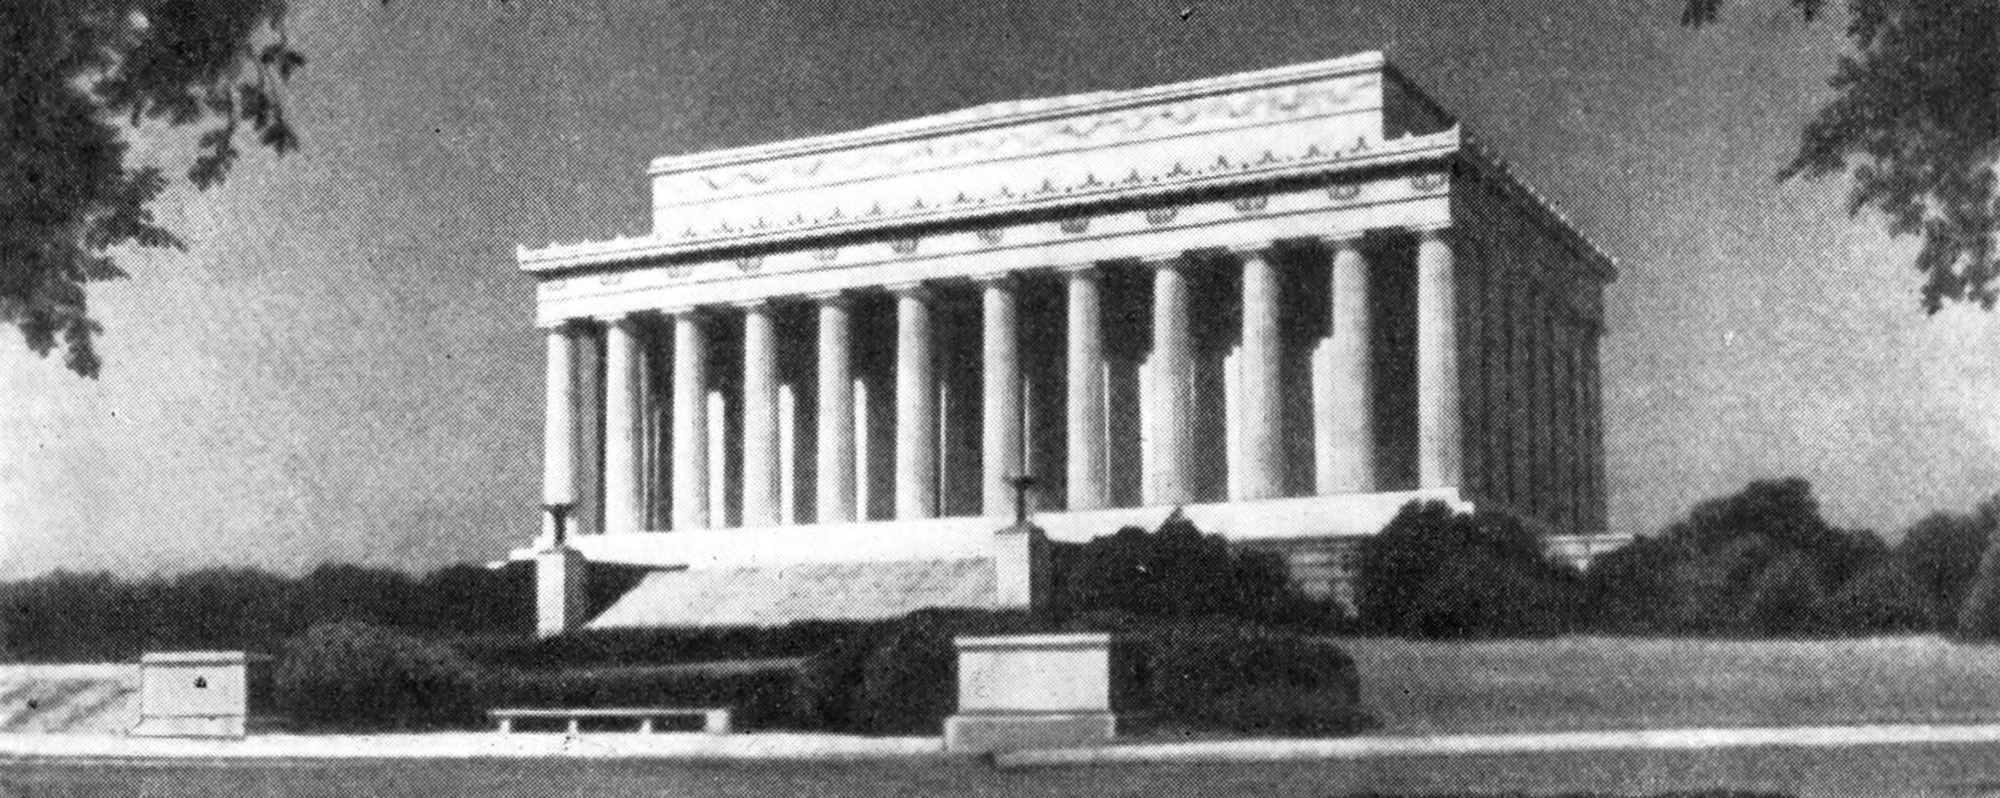 1. Вашингтон. Монумент Линкольну, 1914—1922 гг. Арх. Ч. Бэкон